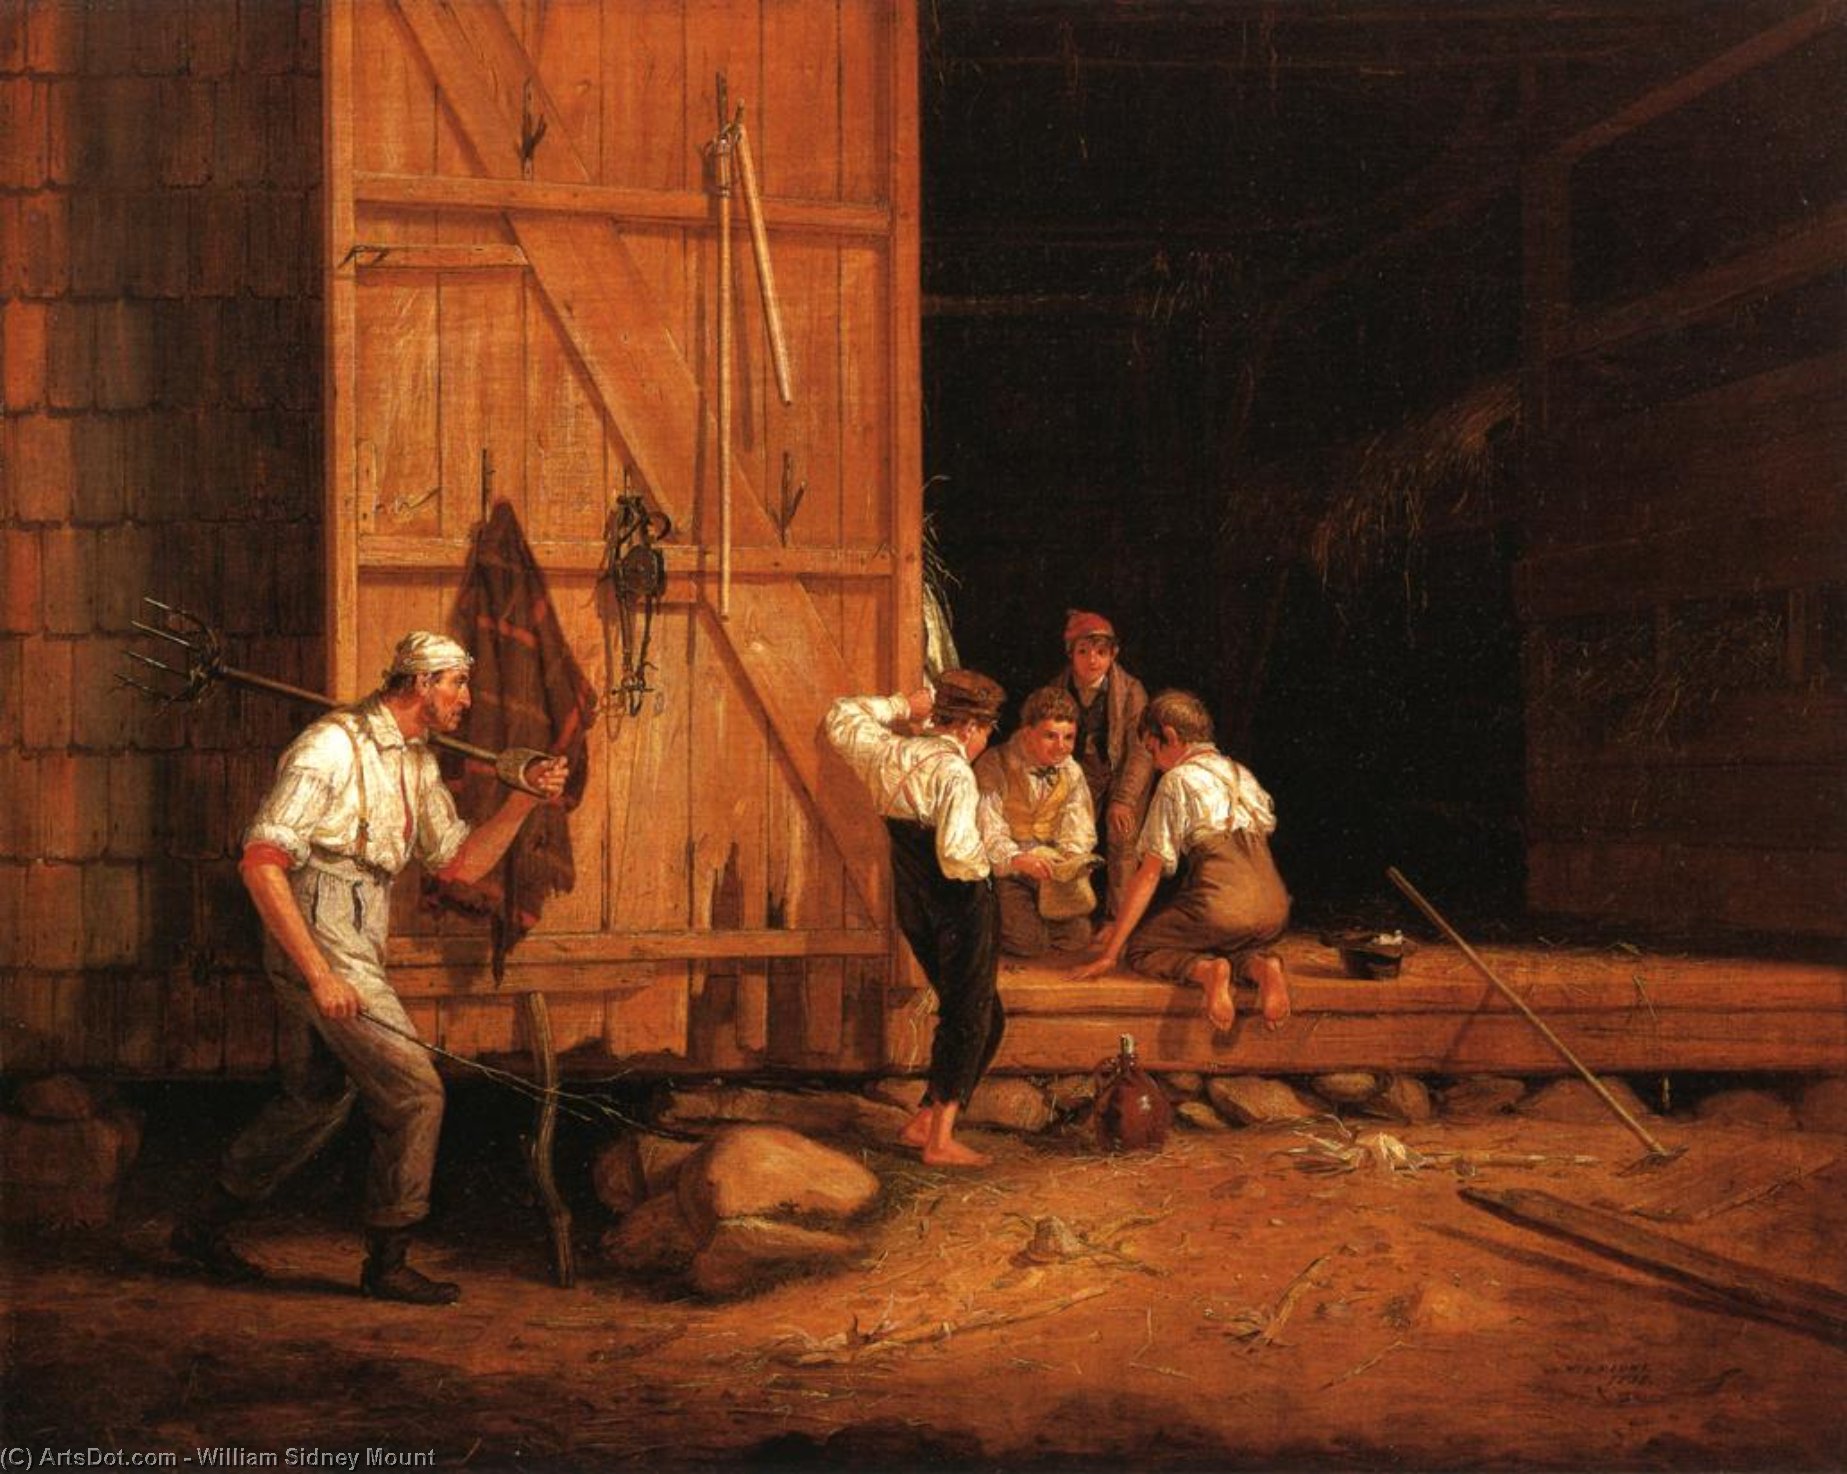 WikiOO.org - אנציקלופדיה לאמנויות יפות - ציור, יצירות אמנות William Sidney Mount - The Truant Gamblers (also known as Undutiful Boys)